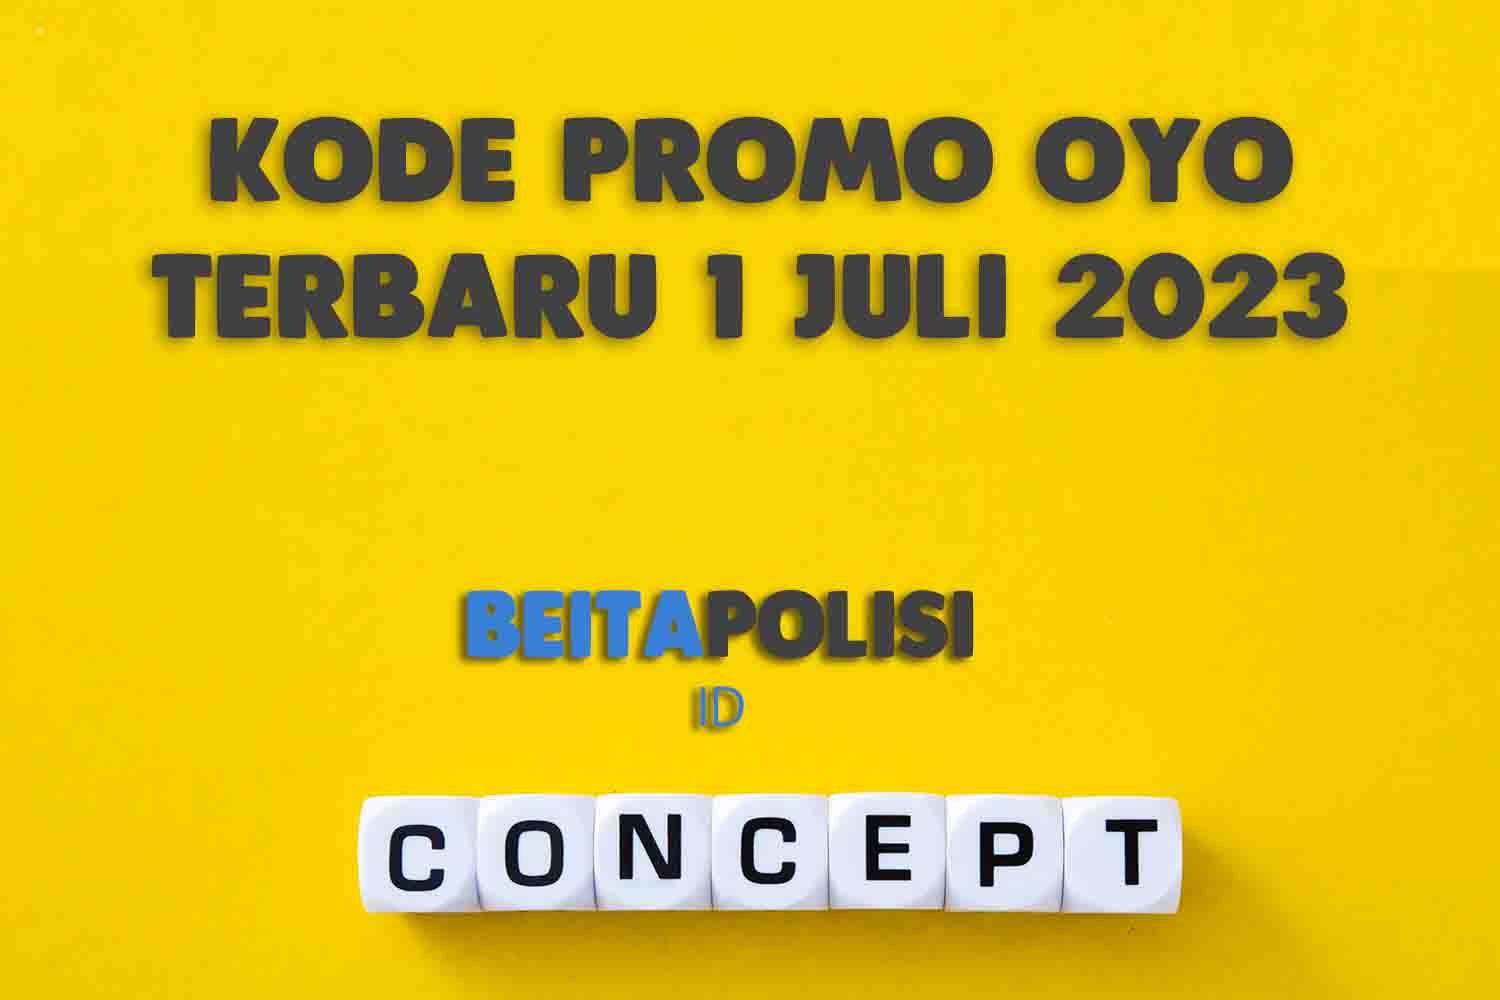 Kode Promo Oyo Terbaru 1 Juli 2023